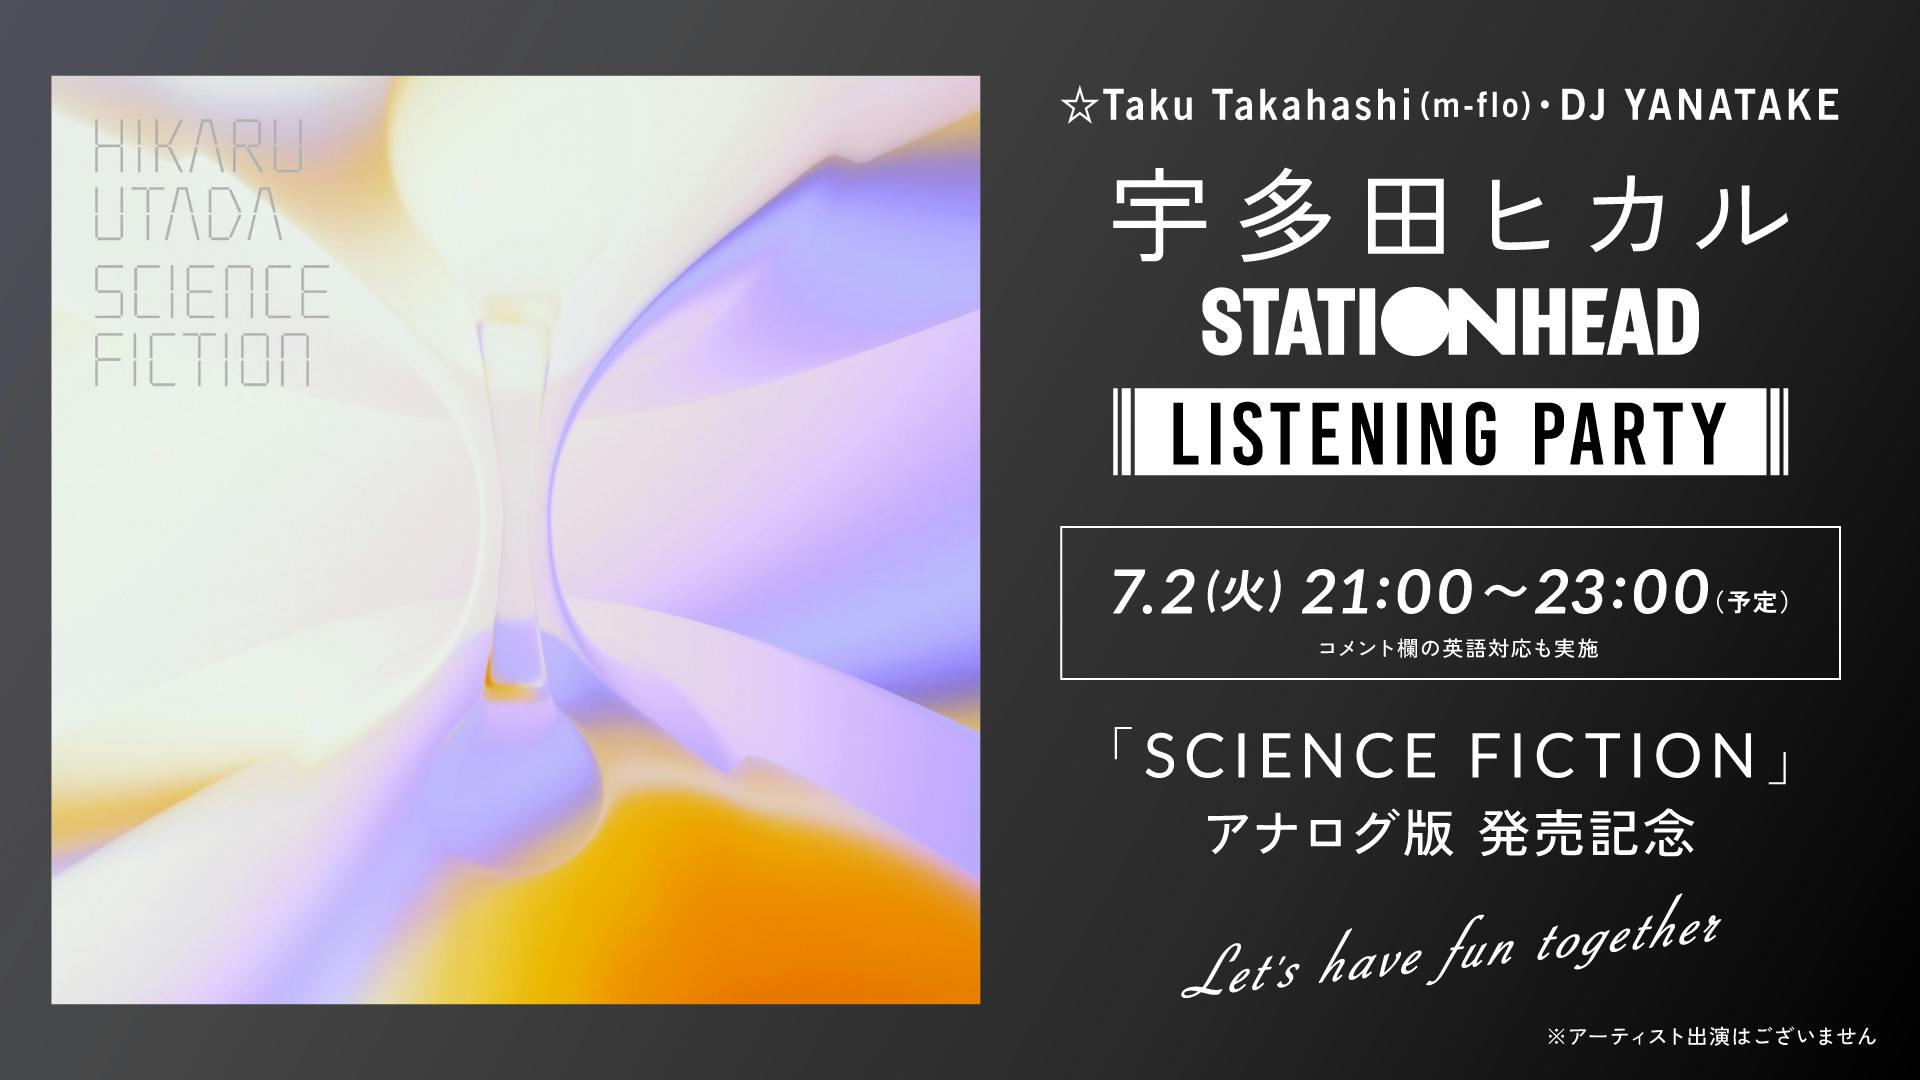 宇多田ヒカル　アナログ盤「SCIENCE FICTION」リリースを記念して ☆Taku Takahashi (m-flo, block.fm)＆DJ YANATAKEをゲストに迎えた STATIONHEADが7月2日夜9時から開催決定のサムネイル